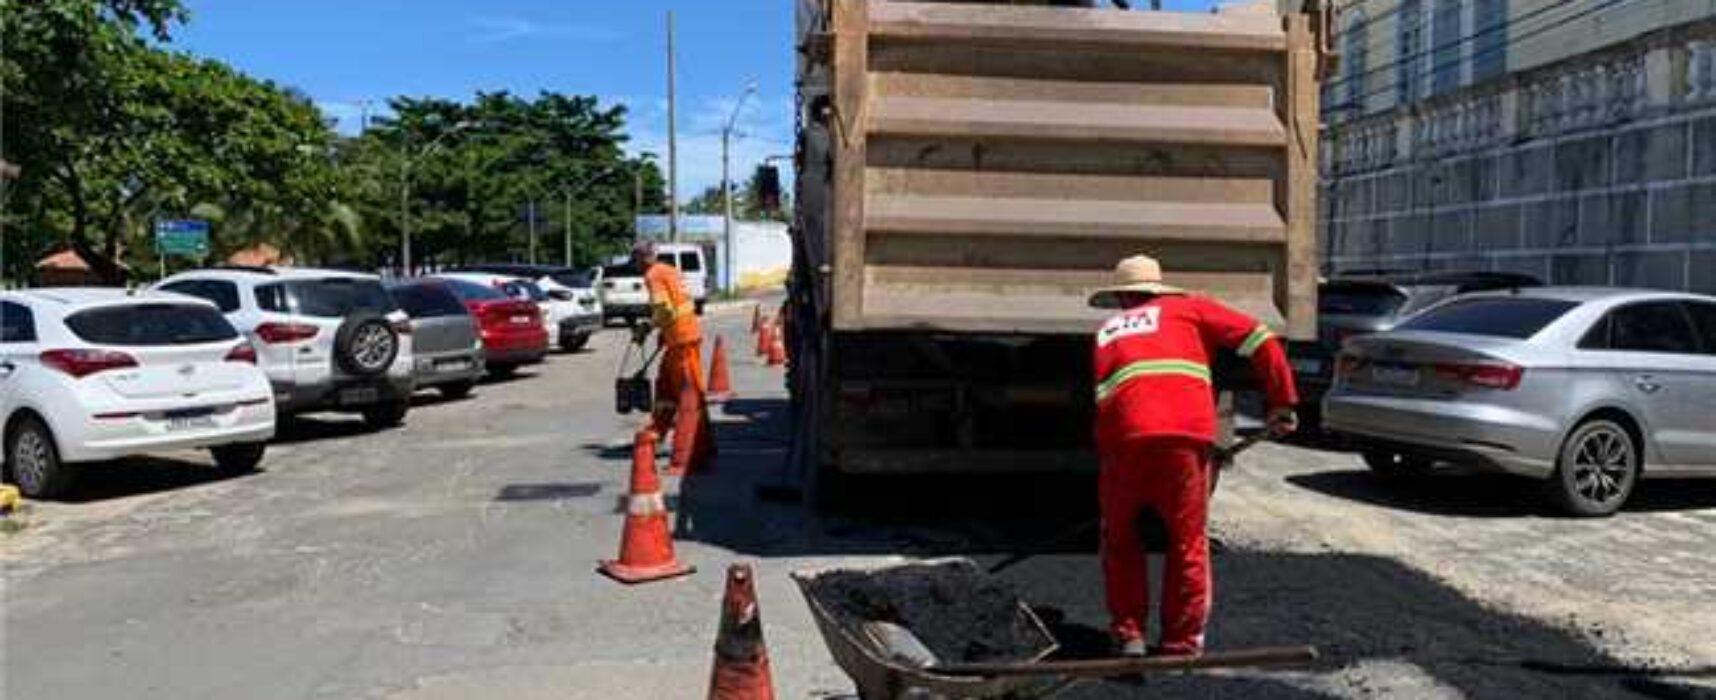 Prefeitura de Ilhéus retoma operação tapa-buracos; confira localidades atendidas